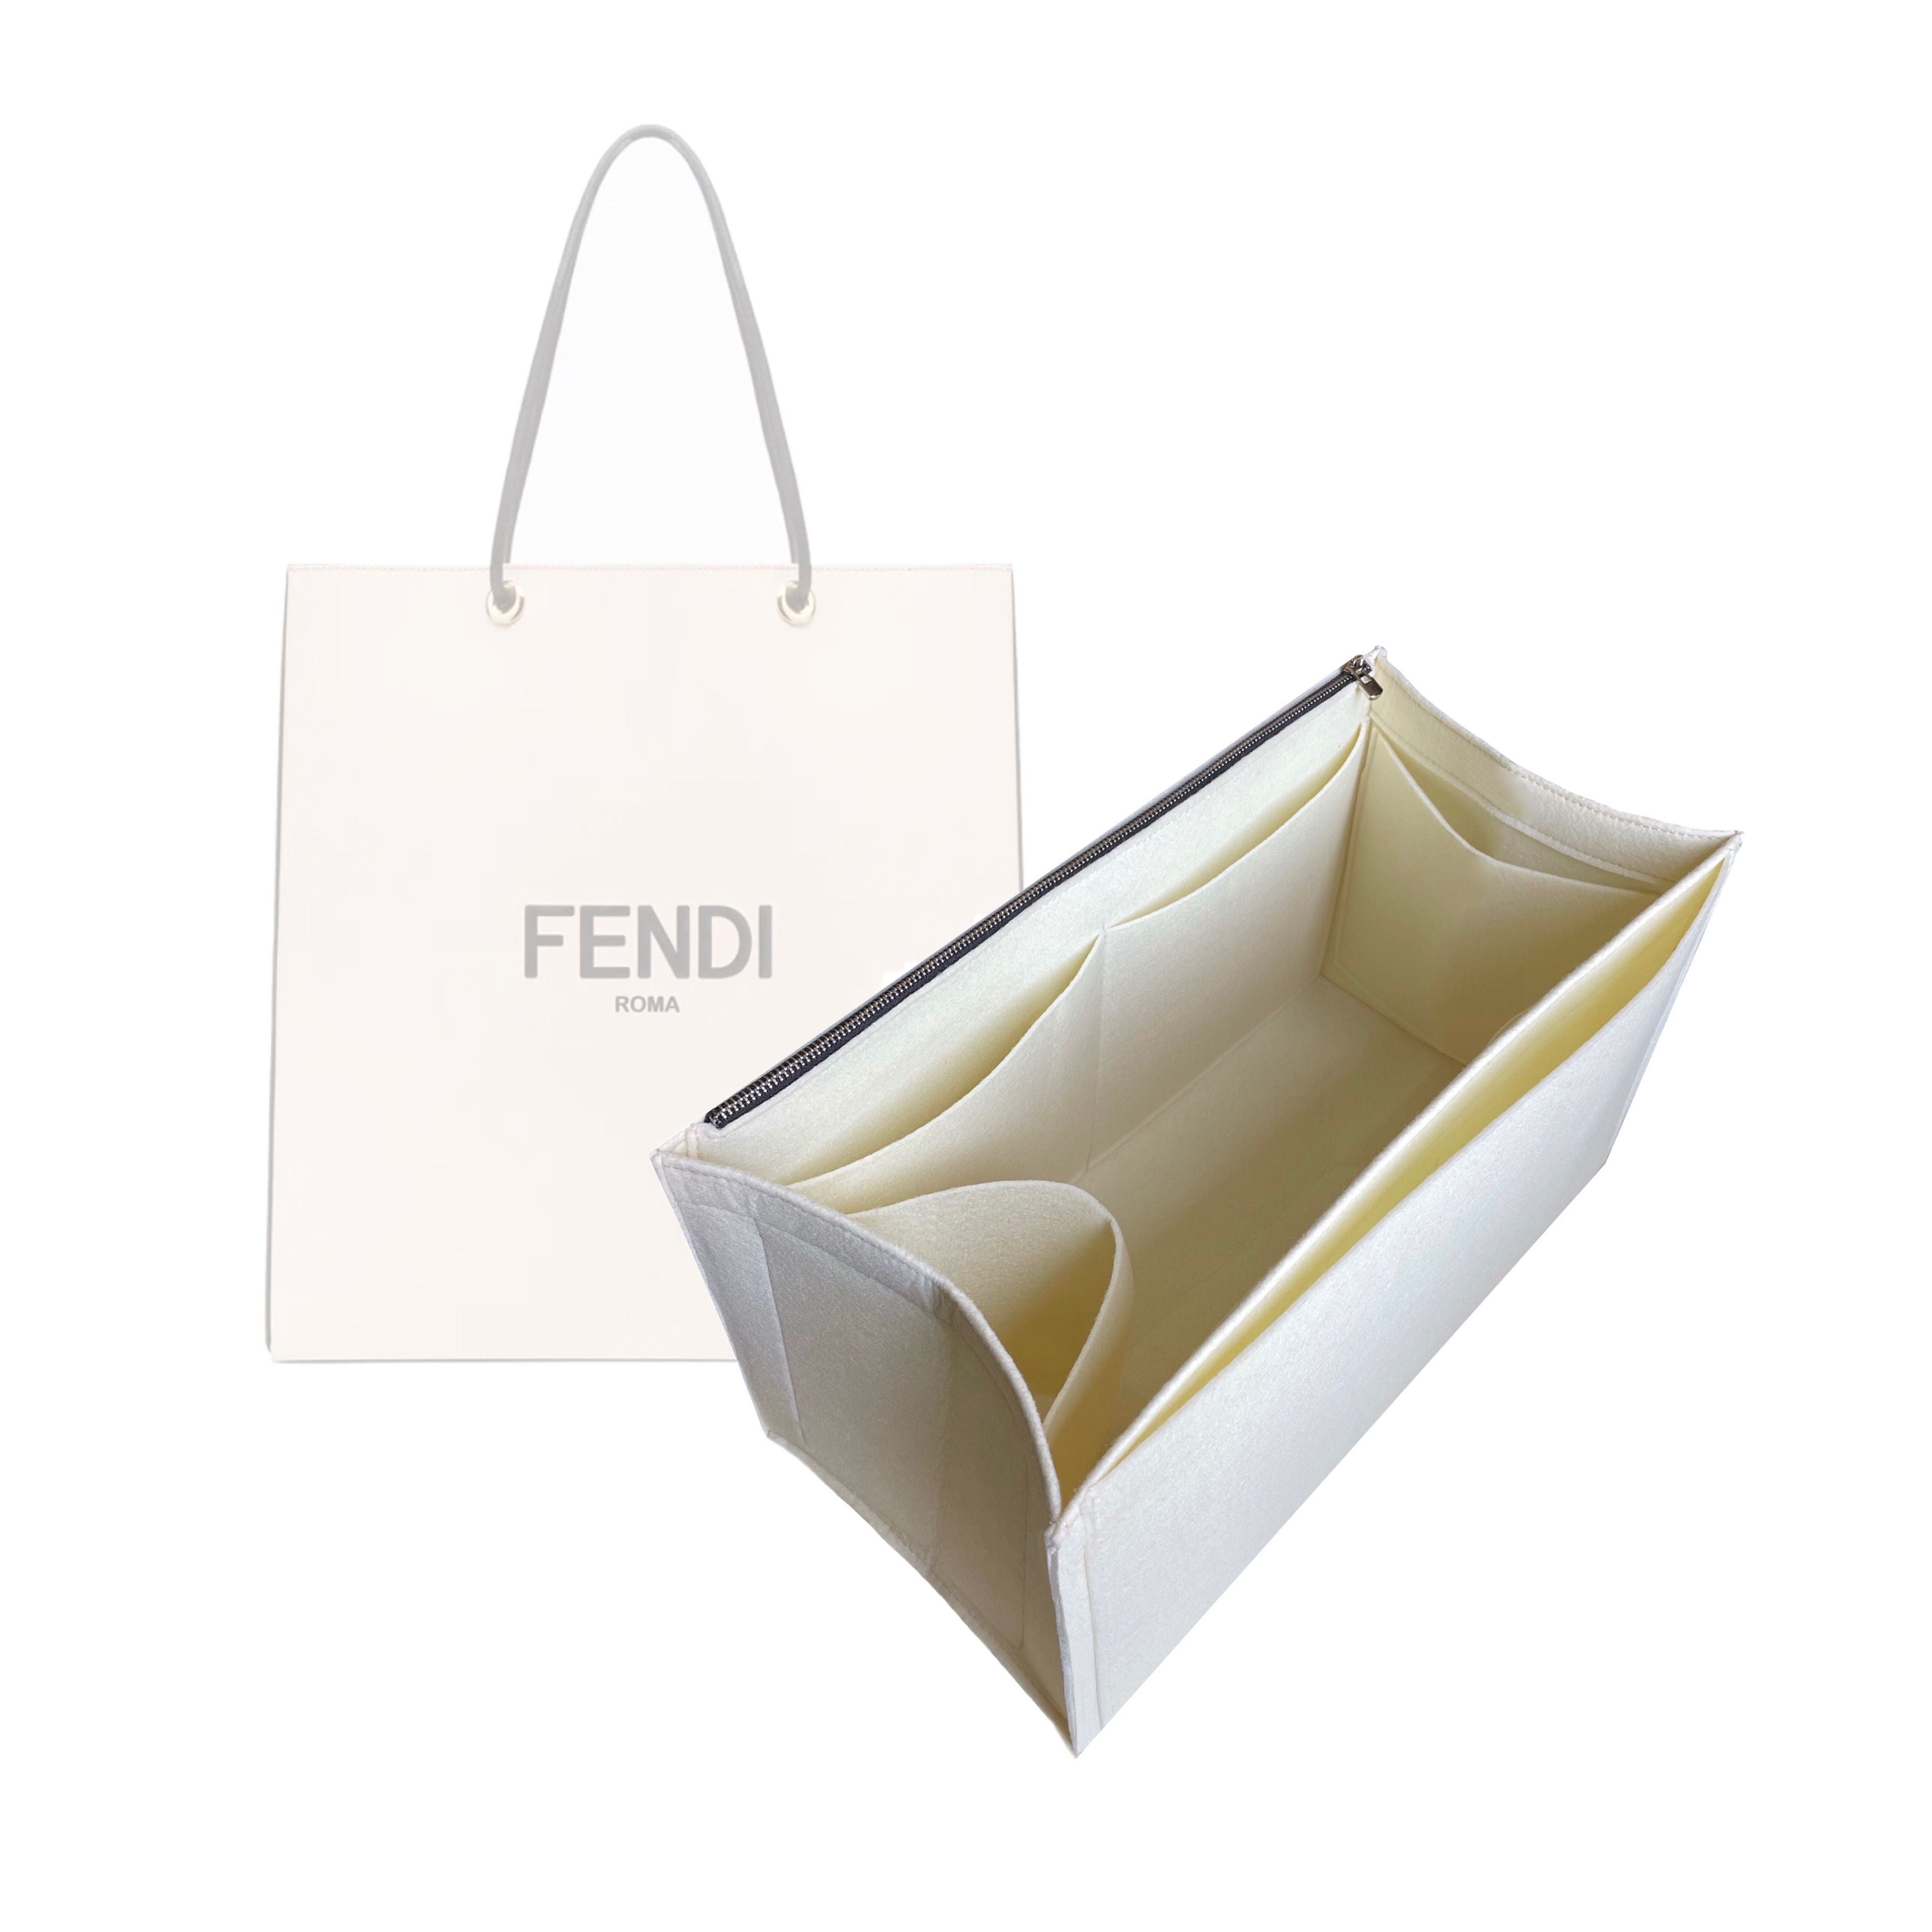 BaginBag® | Handbag Organizer For Fendi FF Shopper Bag | Fendi Purse Insert  | Bag Liner | Fendi Insert Organizer |  Fendi Tote  Organizer | Bag Organizer | Luxury bag |  Fendi Bag protector |  Fendi Tote Insert | Fendi Inner Bag